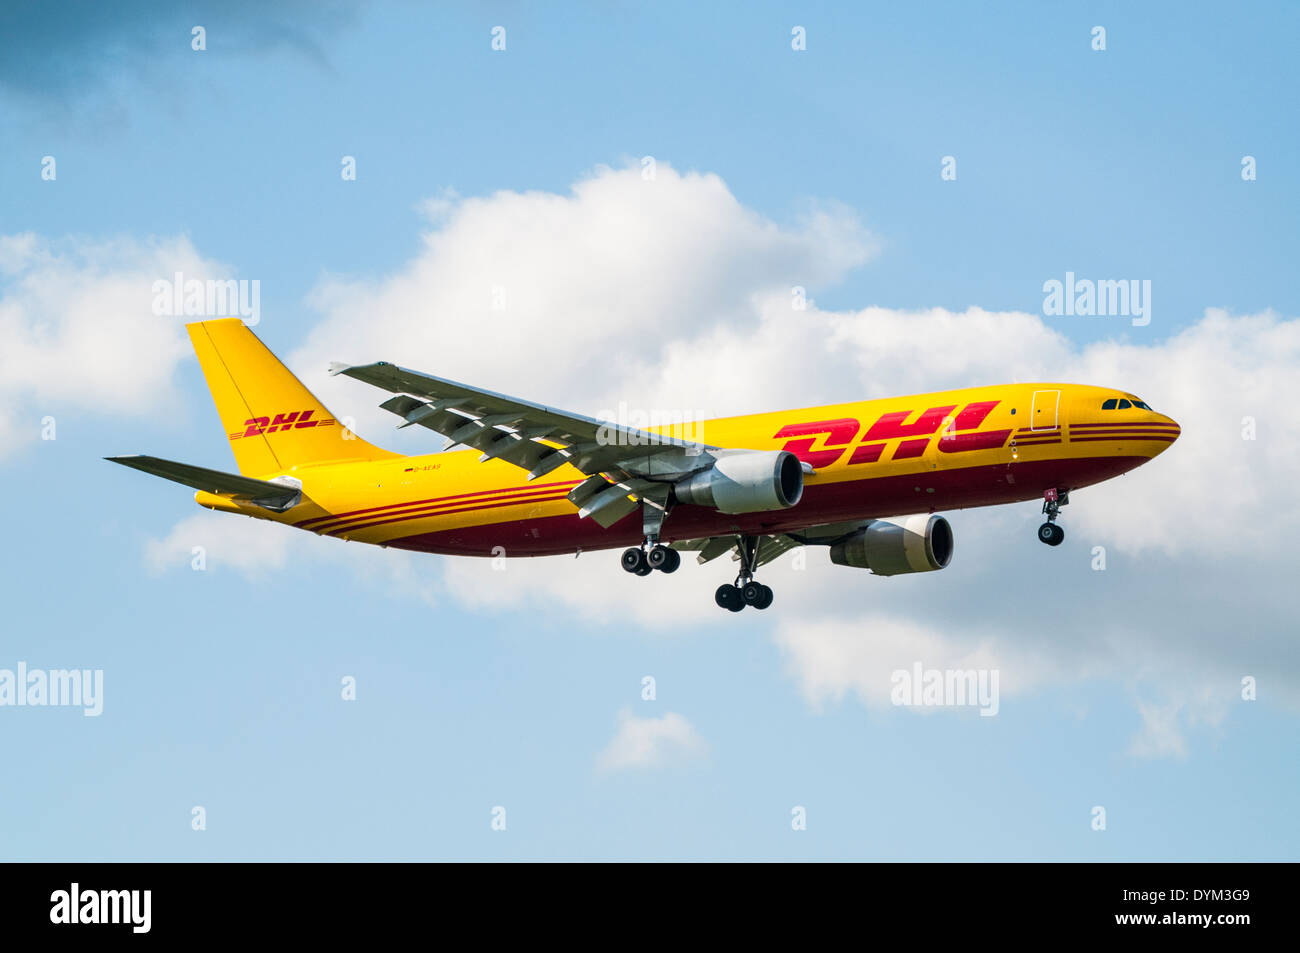 Vue latérale d'un Airbus A300 DHL cargo plane sur l'approche de l'atterrissage avec Banque D'Images